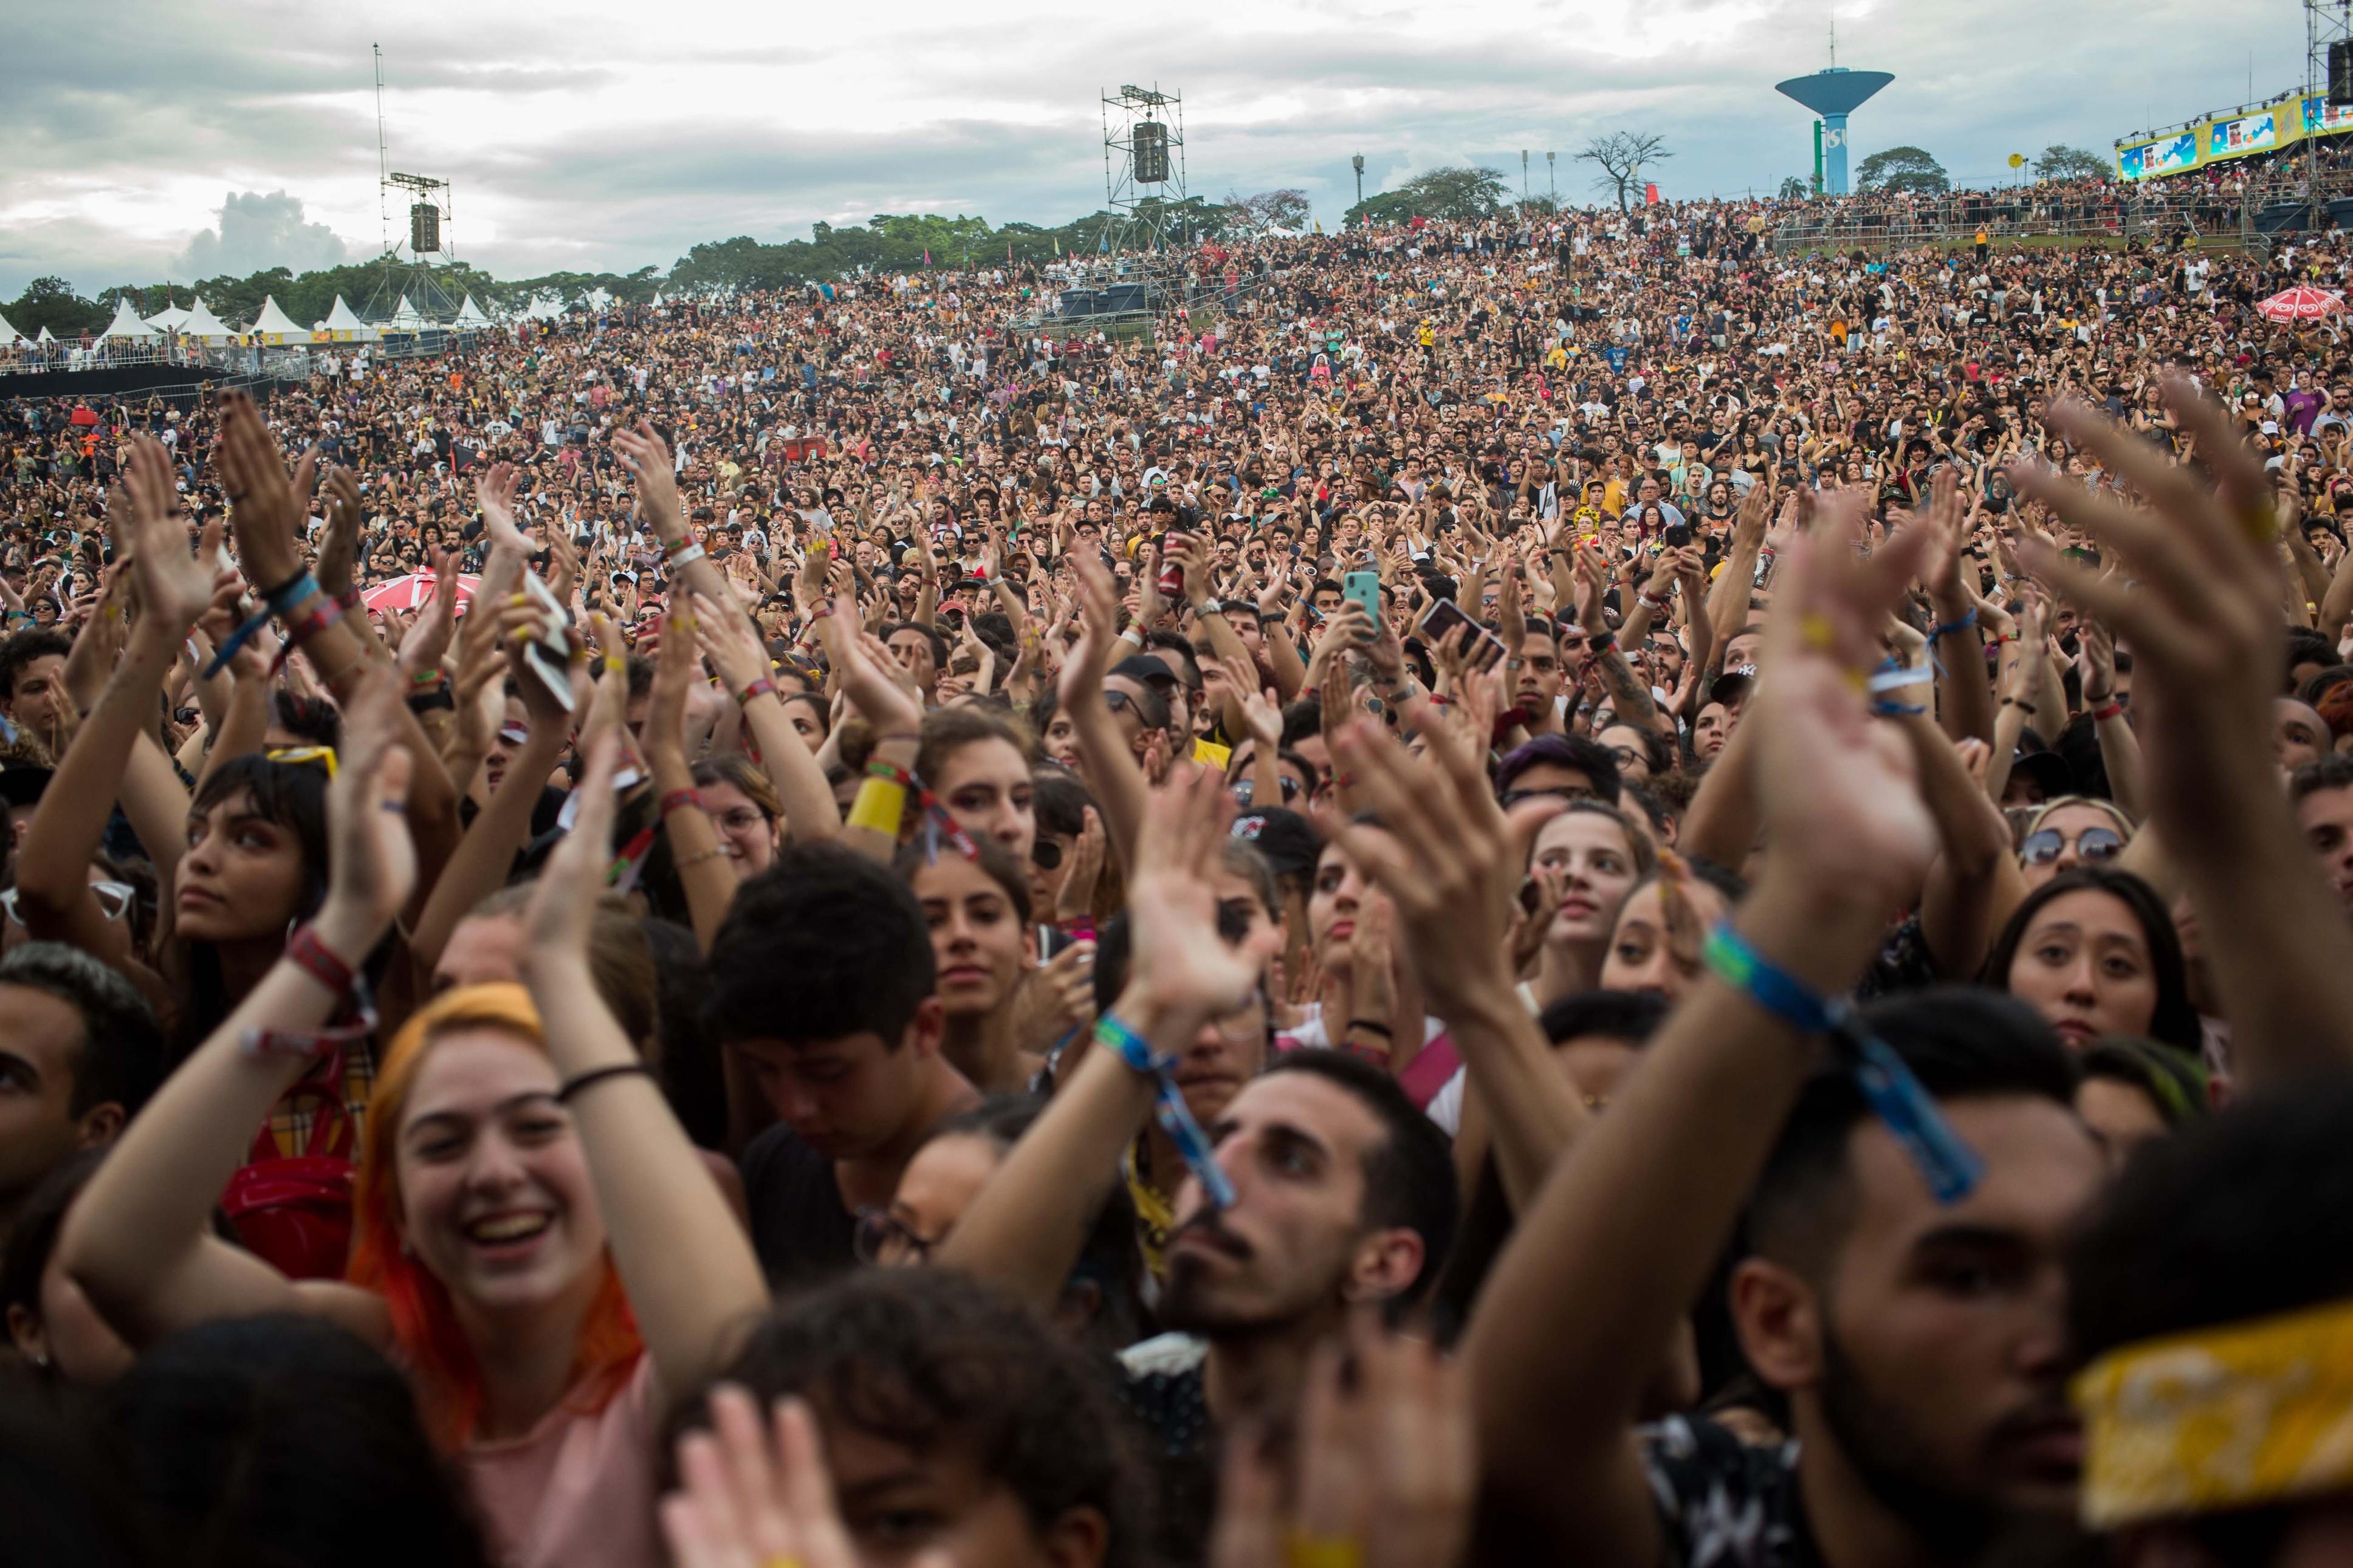 Ingresso para o Lollapalooza 2023 começa a ser vendido para o público geral  a partir de R$ 1.060 - Estadão